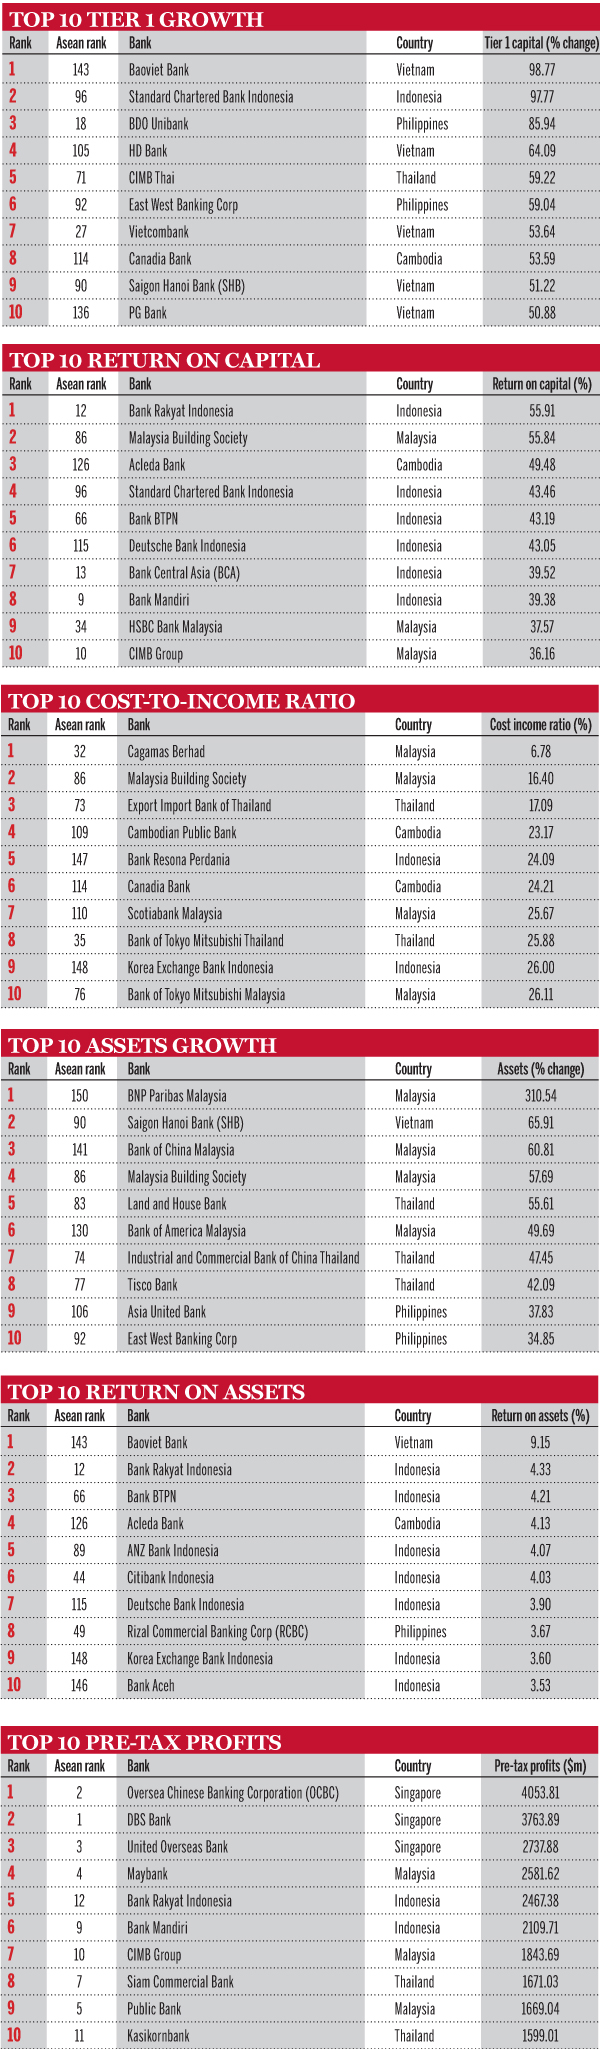 Top Asean banks ranking